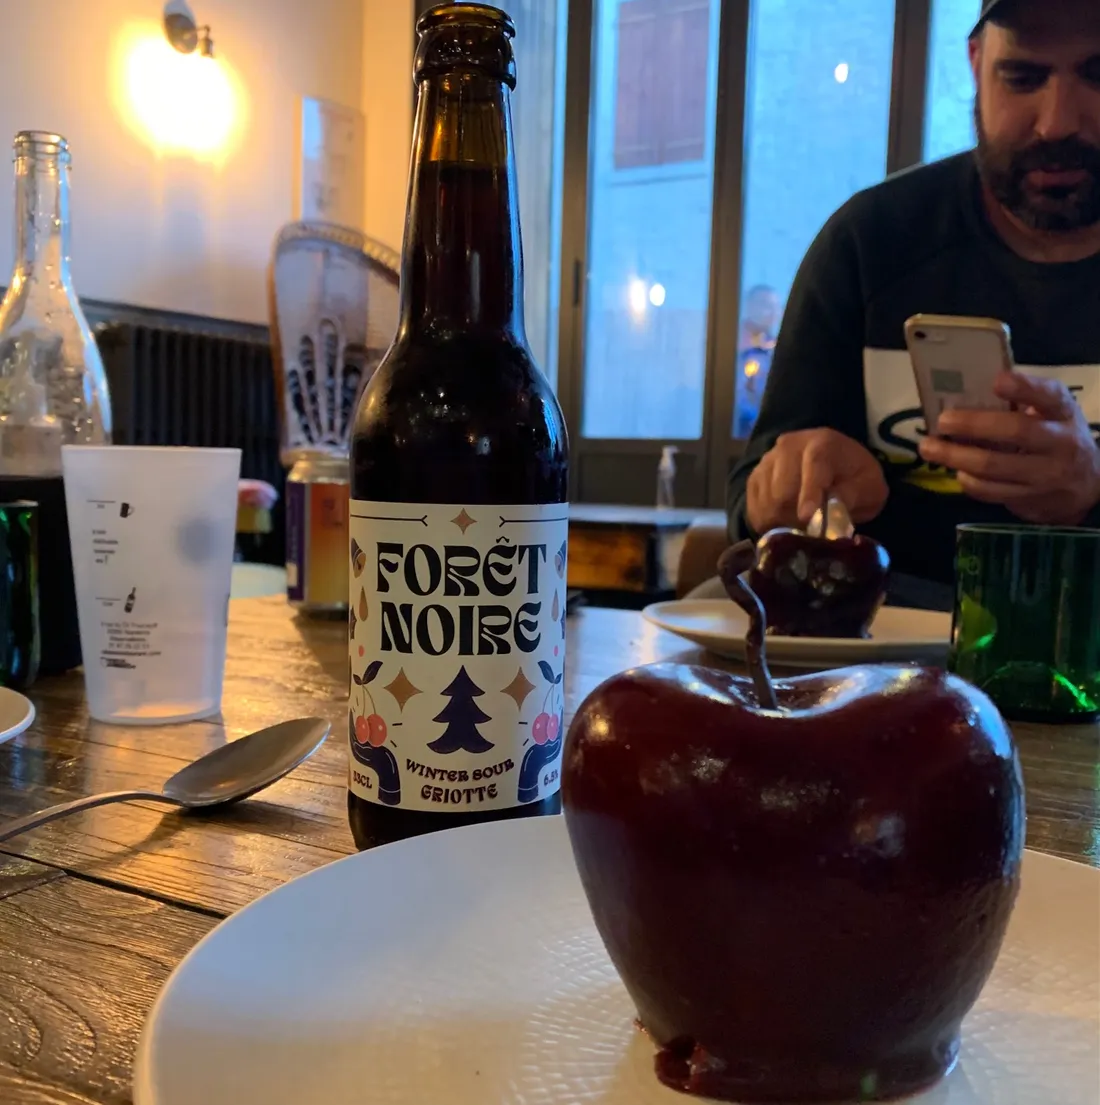 La forêt-noire proposée en dessert, et la bière qui l'accompagne.